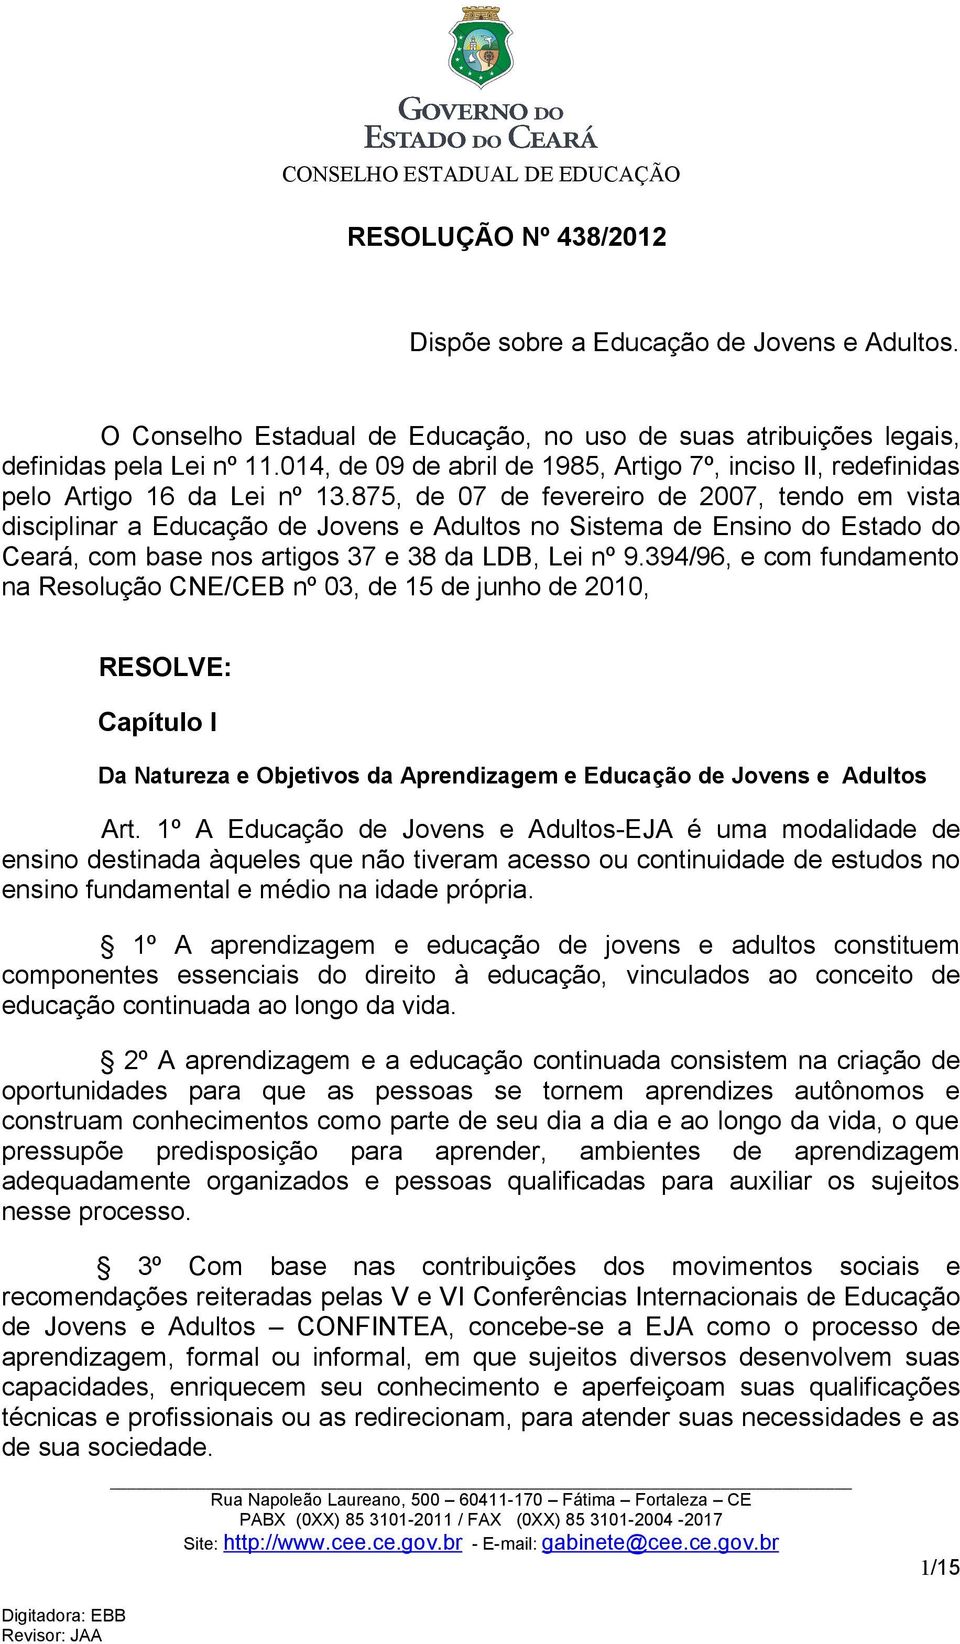 875, de 07 de fevereiro de 2007, tendo em vista disciplinar a Educação de Jovens e Adultos no Sistema de Ensino do Estado do Ceará, com base nos artigos 37 e 38 da LDB, Lei nº 9.